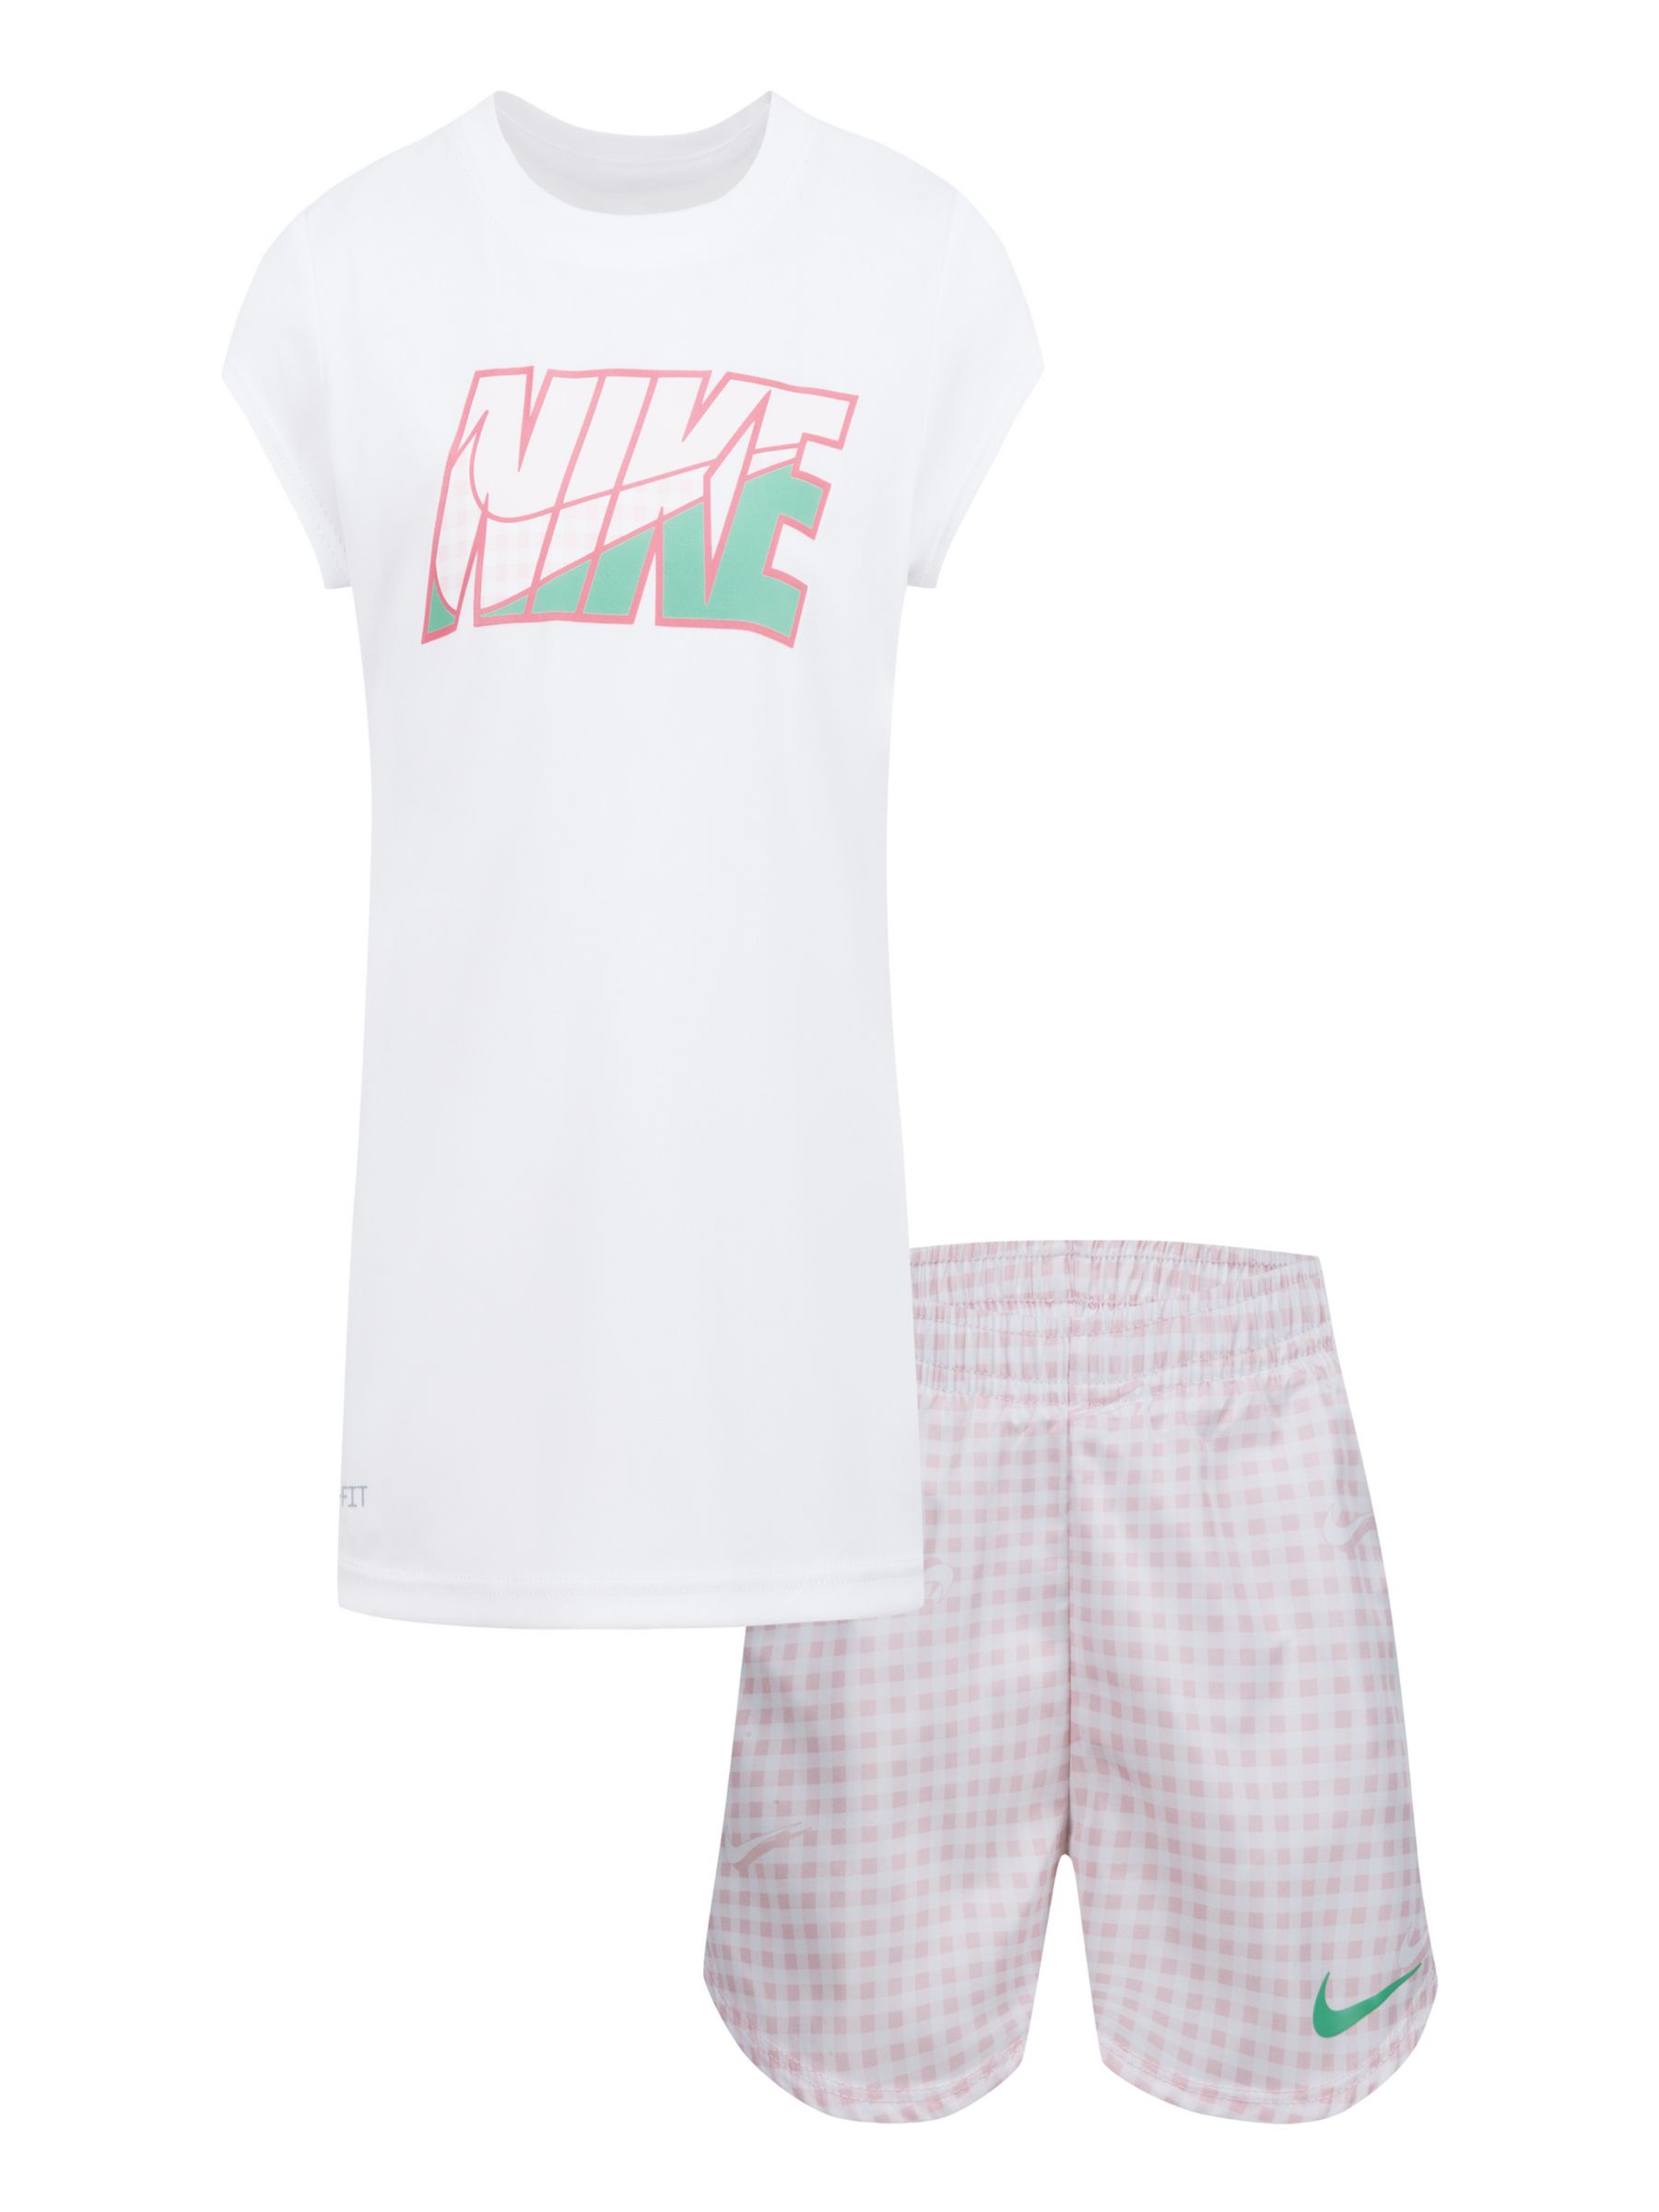 Nike Junior Dri-Fit set Black - t-shirt & shorts